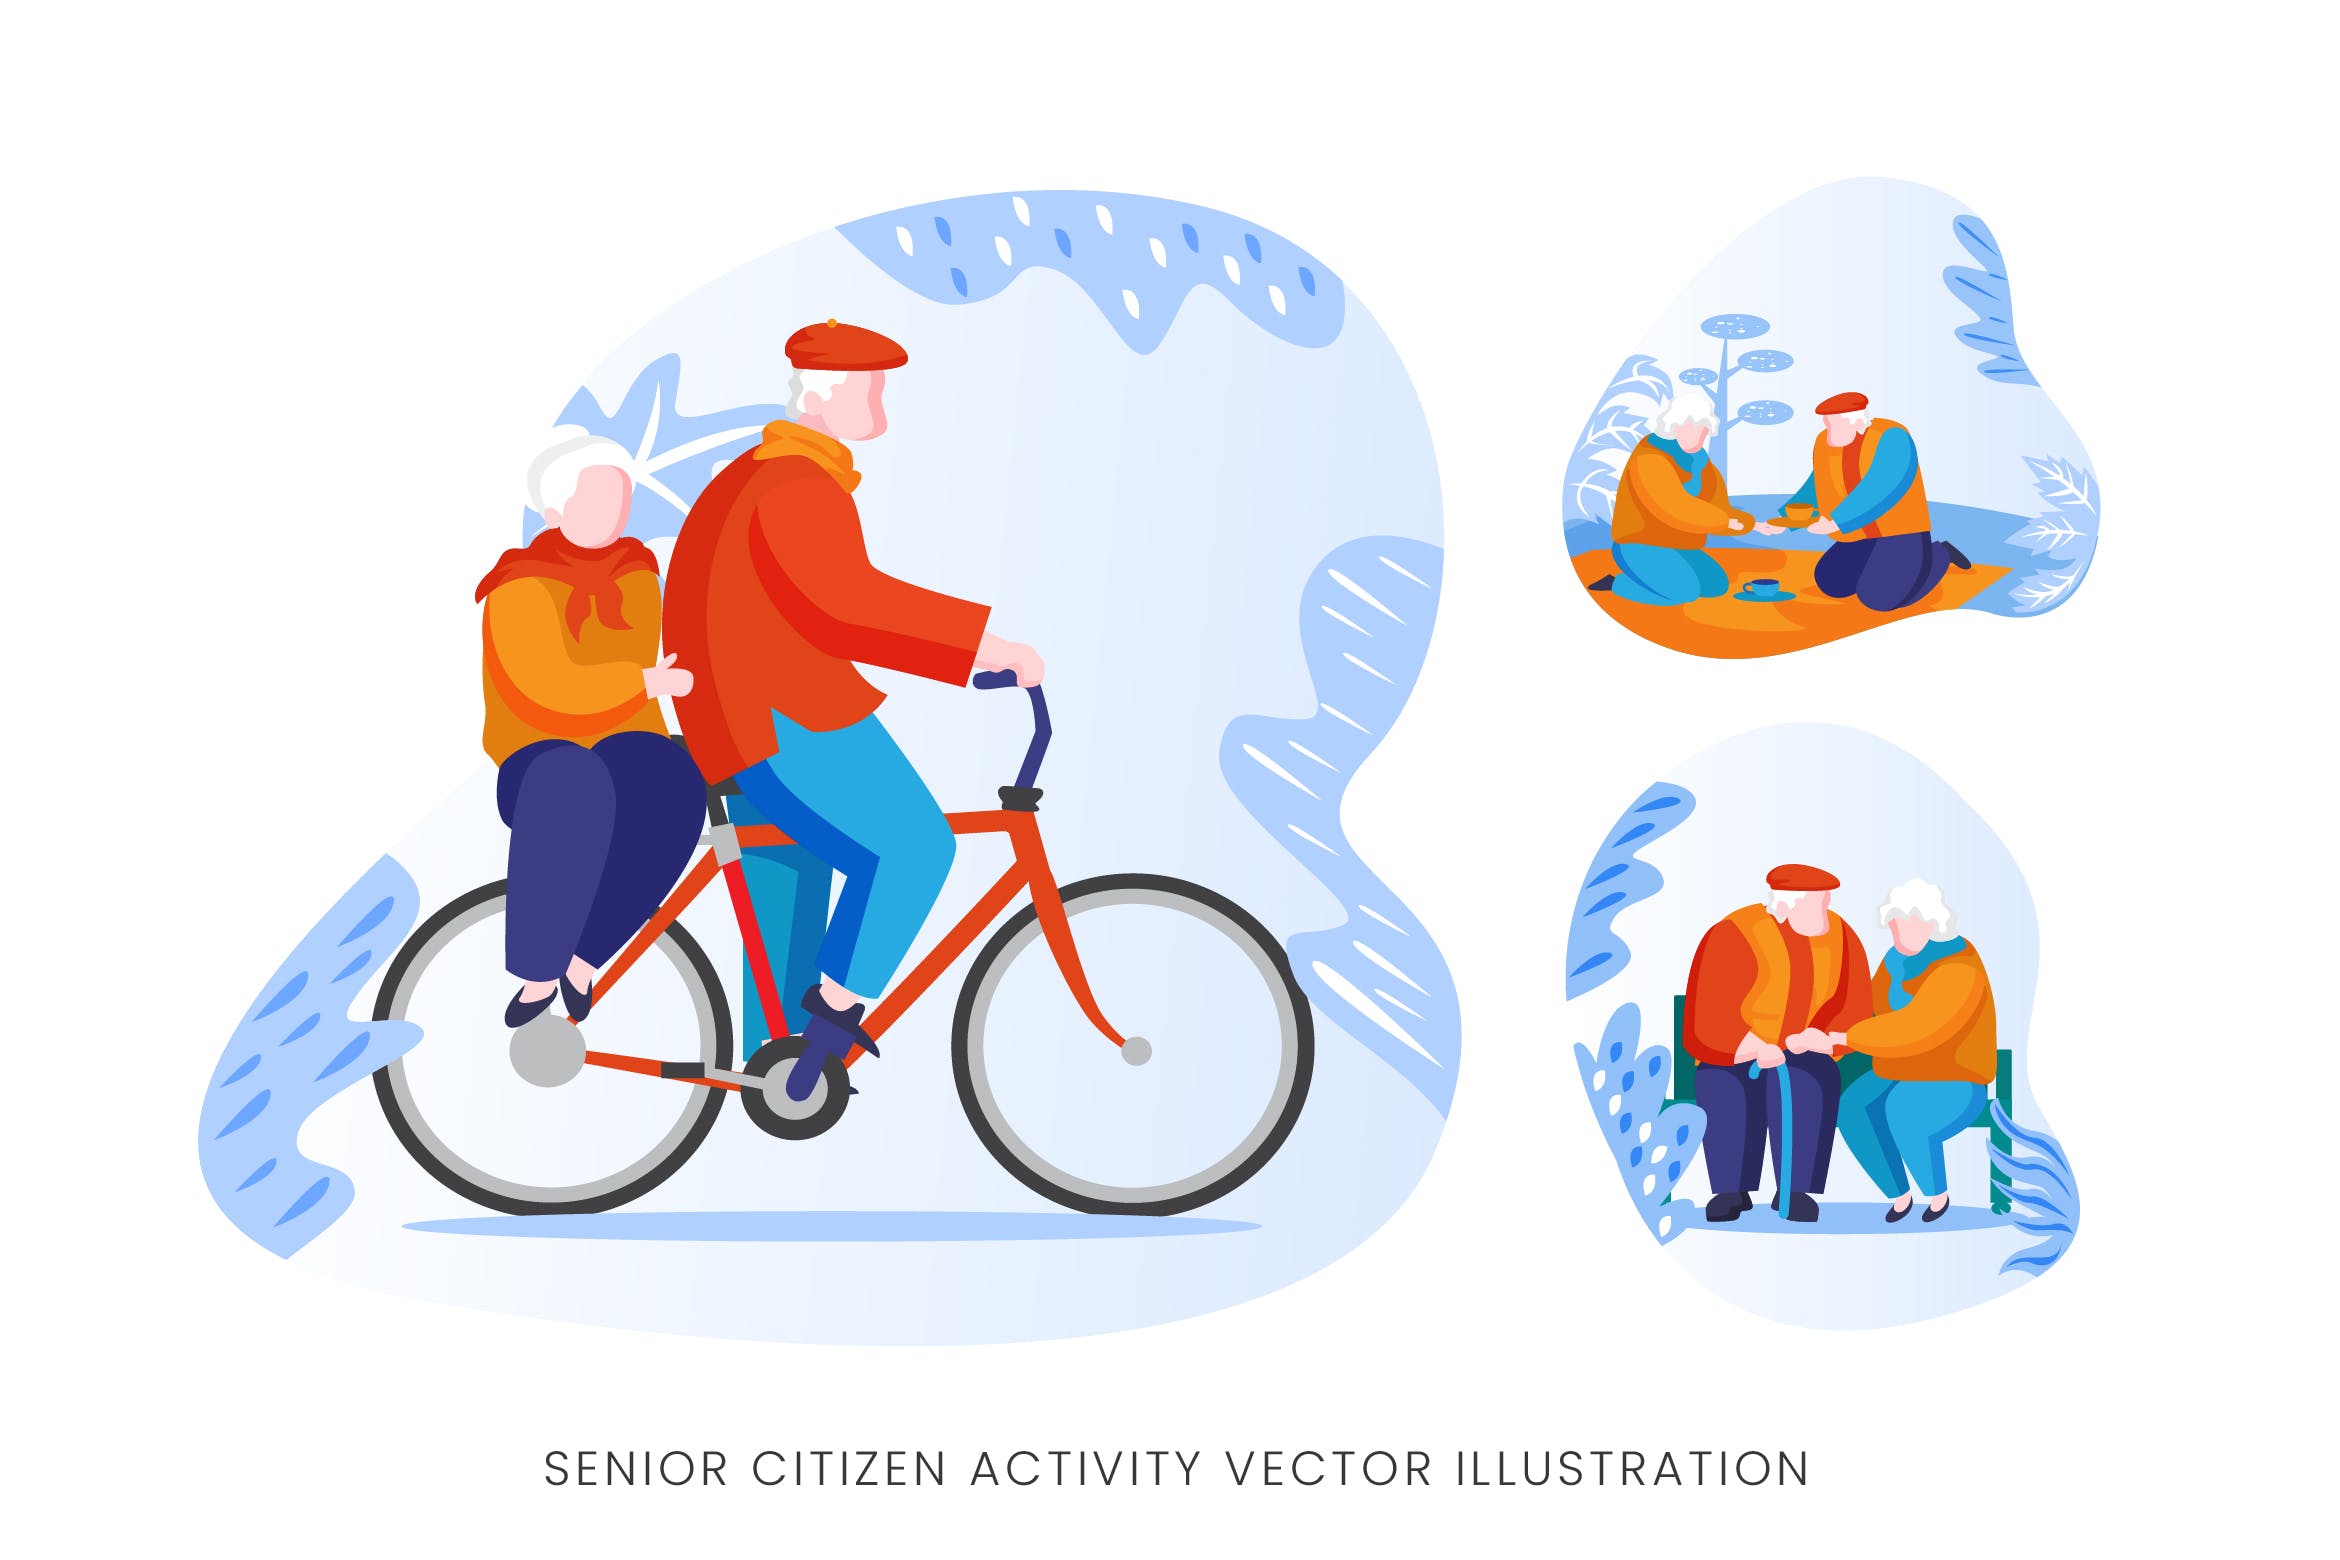 老年人生活人物形象矢量手绘第一素材精选设计素材 Senior Citizen Vector Character Set插图